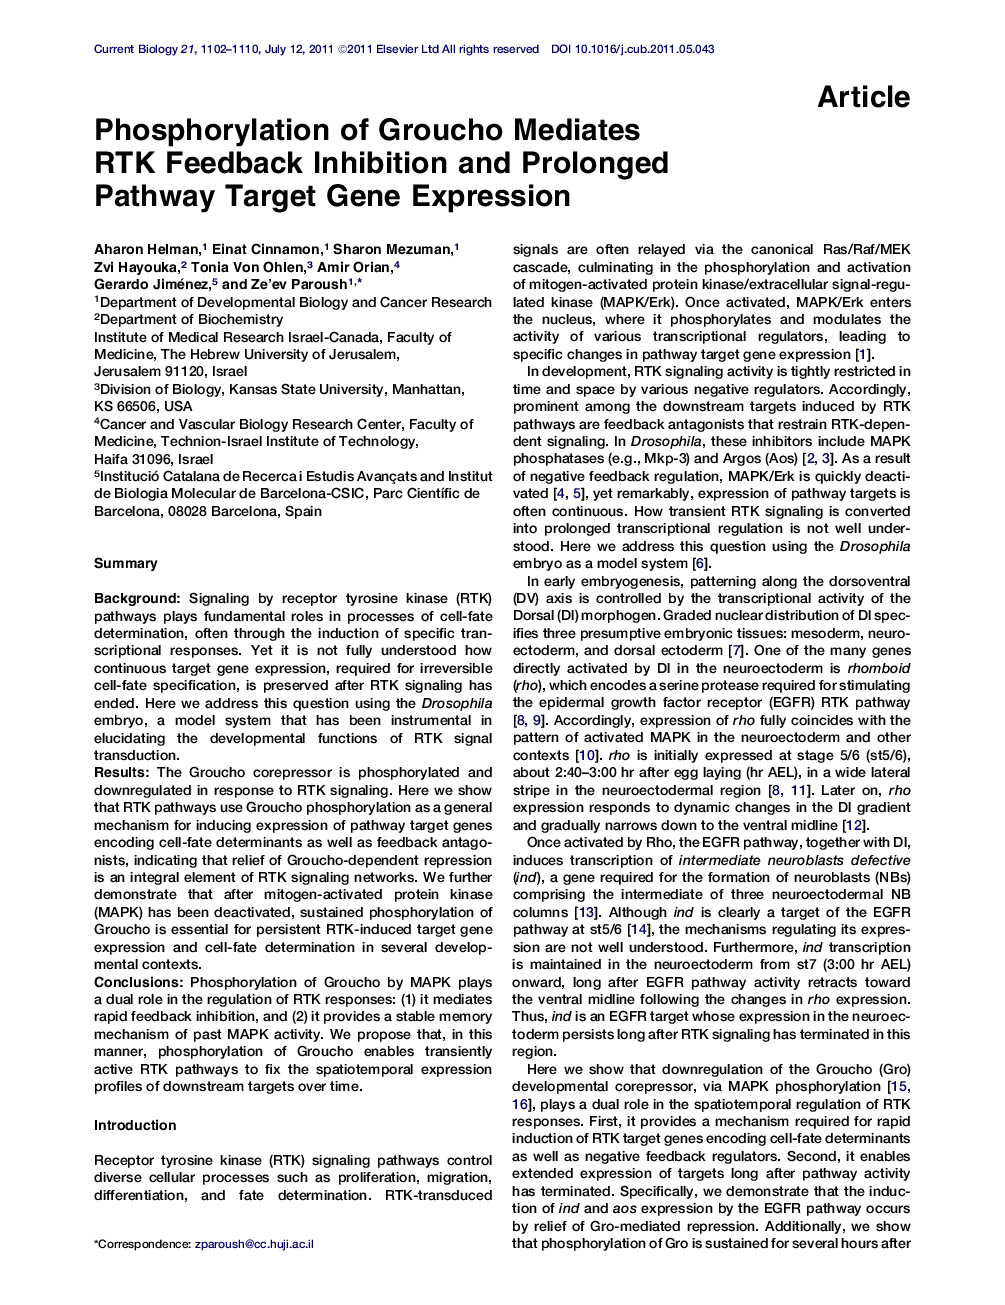 Phosphorylation of Groucho Mediates RTK Feedback Inhibition and Prolonged Pathway Target Gene Expression